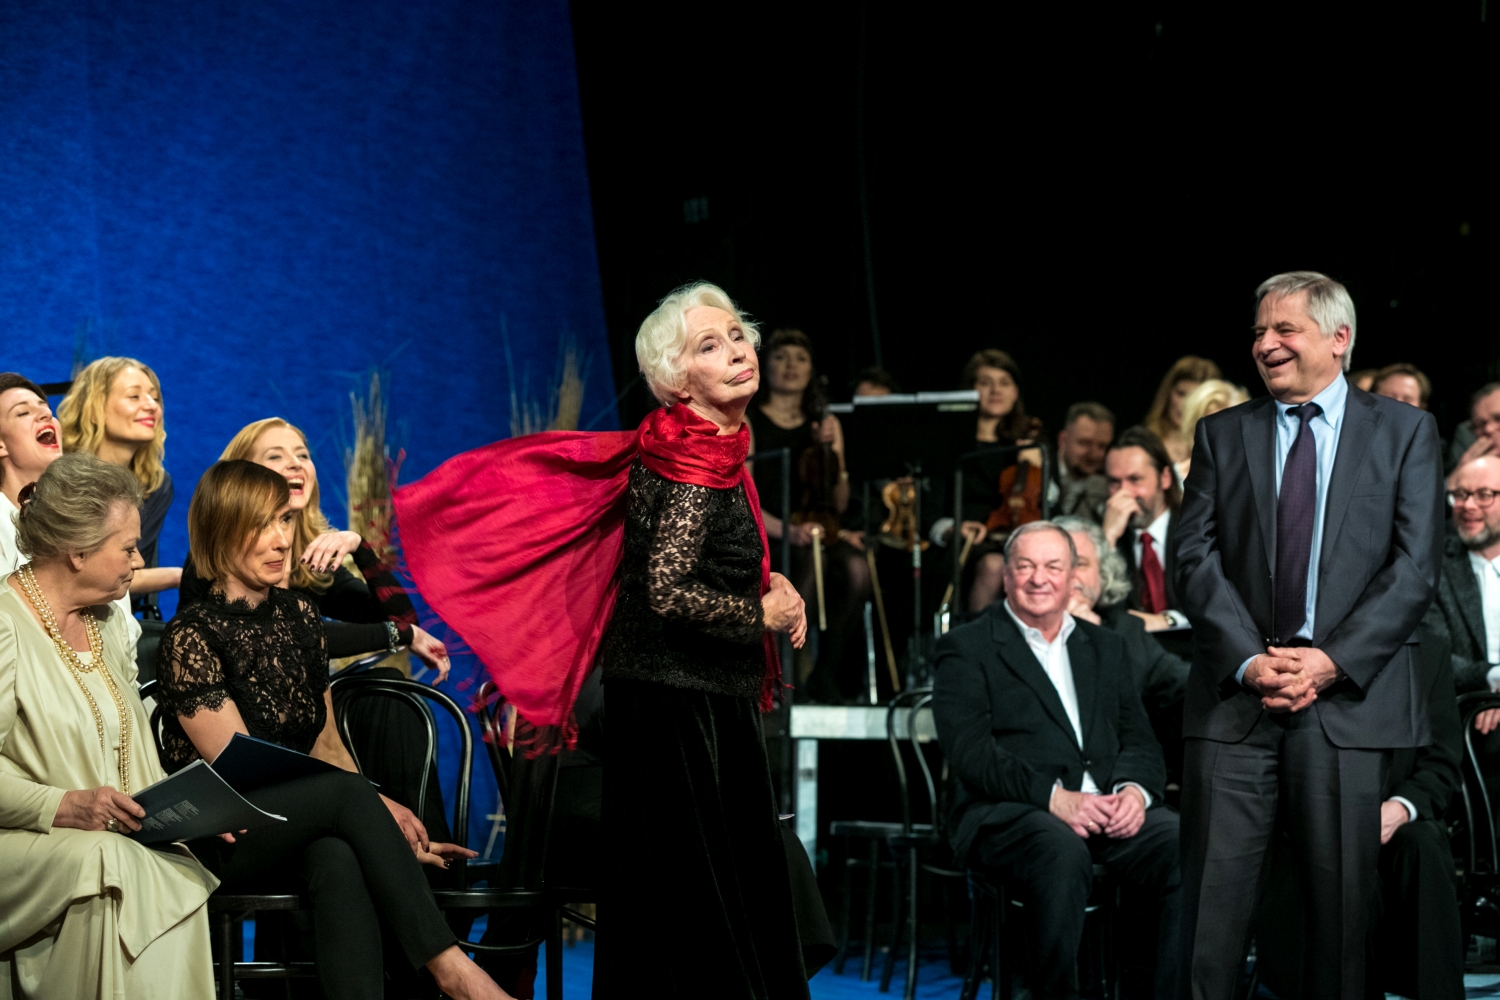 Scena zbiorowa, starsza kobieta ubrana na czarno, z rozwianym czerwonym szalem, stoi na scenie.